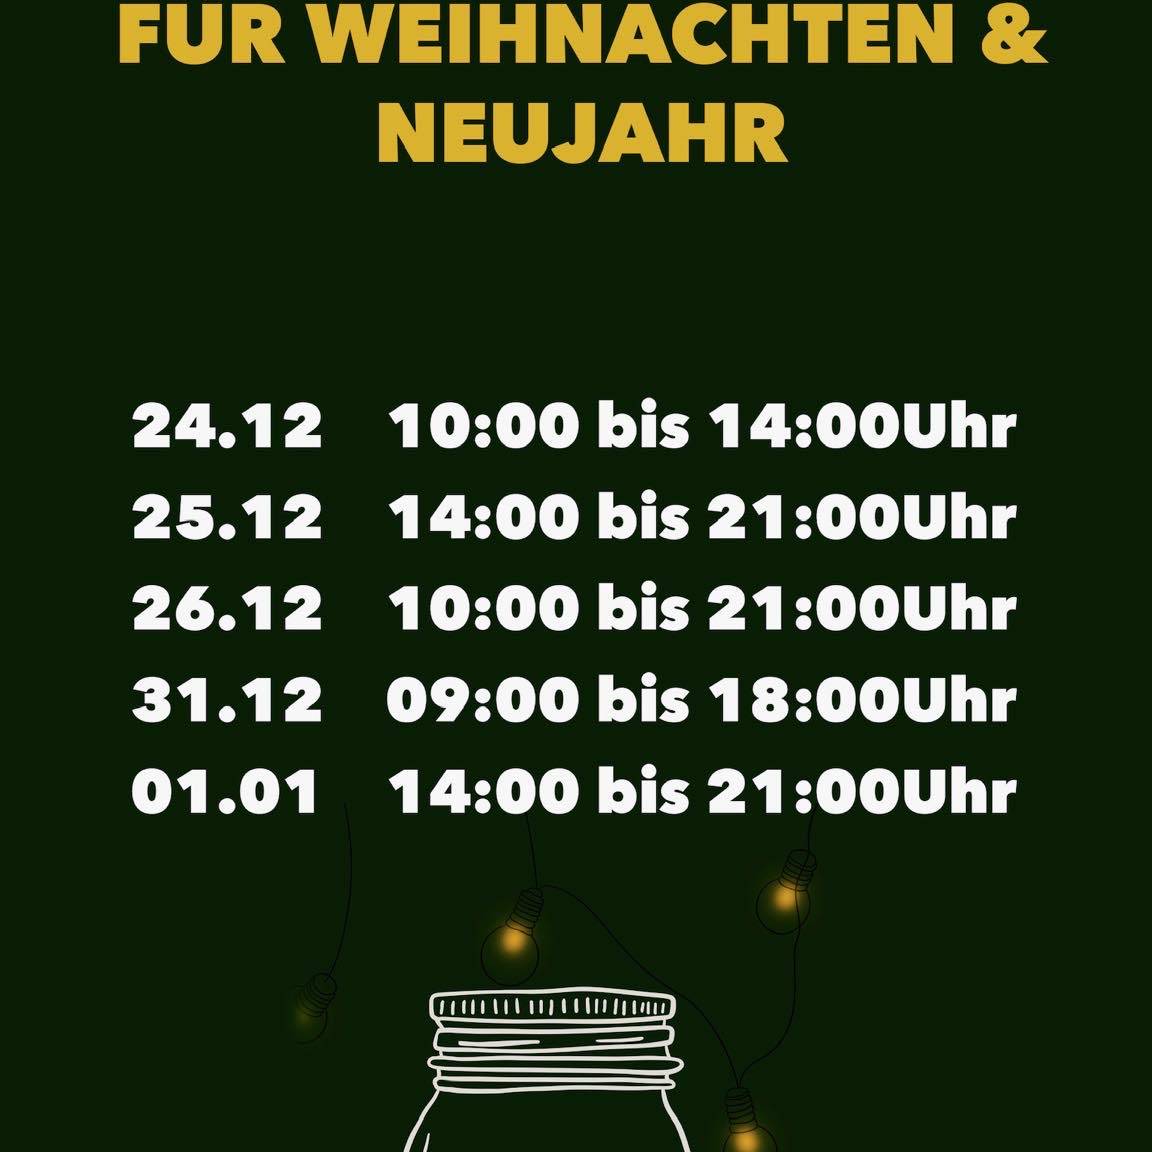 Steile Feiertage. Öffnungszeiten der Boulderhalle Steil in Karlsruhe über Weihnachten und Neujahr: 24.12.: 10 Uhr bis 14 Uhr, 25.12.: 14 Uhr bis 21 Uhr, 26.12.: 10 Uhr bis 21 Uhr, 31.12.: 9 Uhr bis 18 Uhr und 01.01.: 14 Uhr bis 21 Uhr.